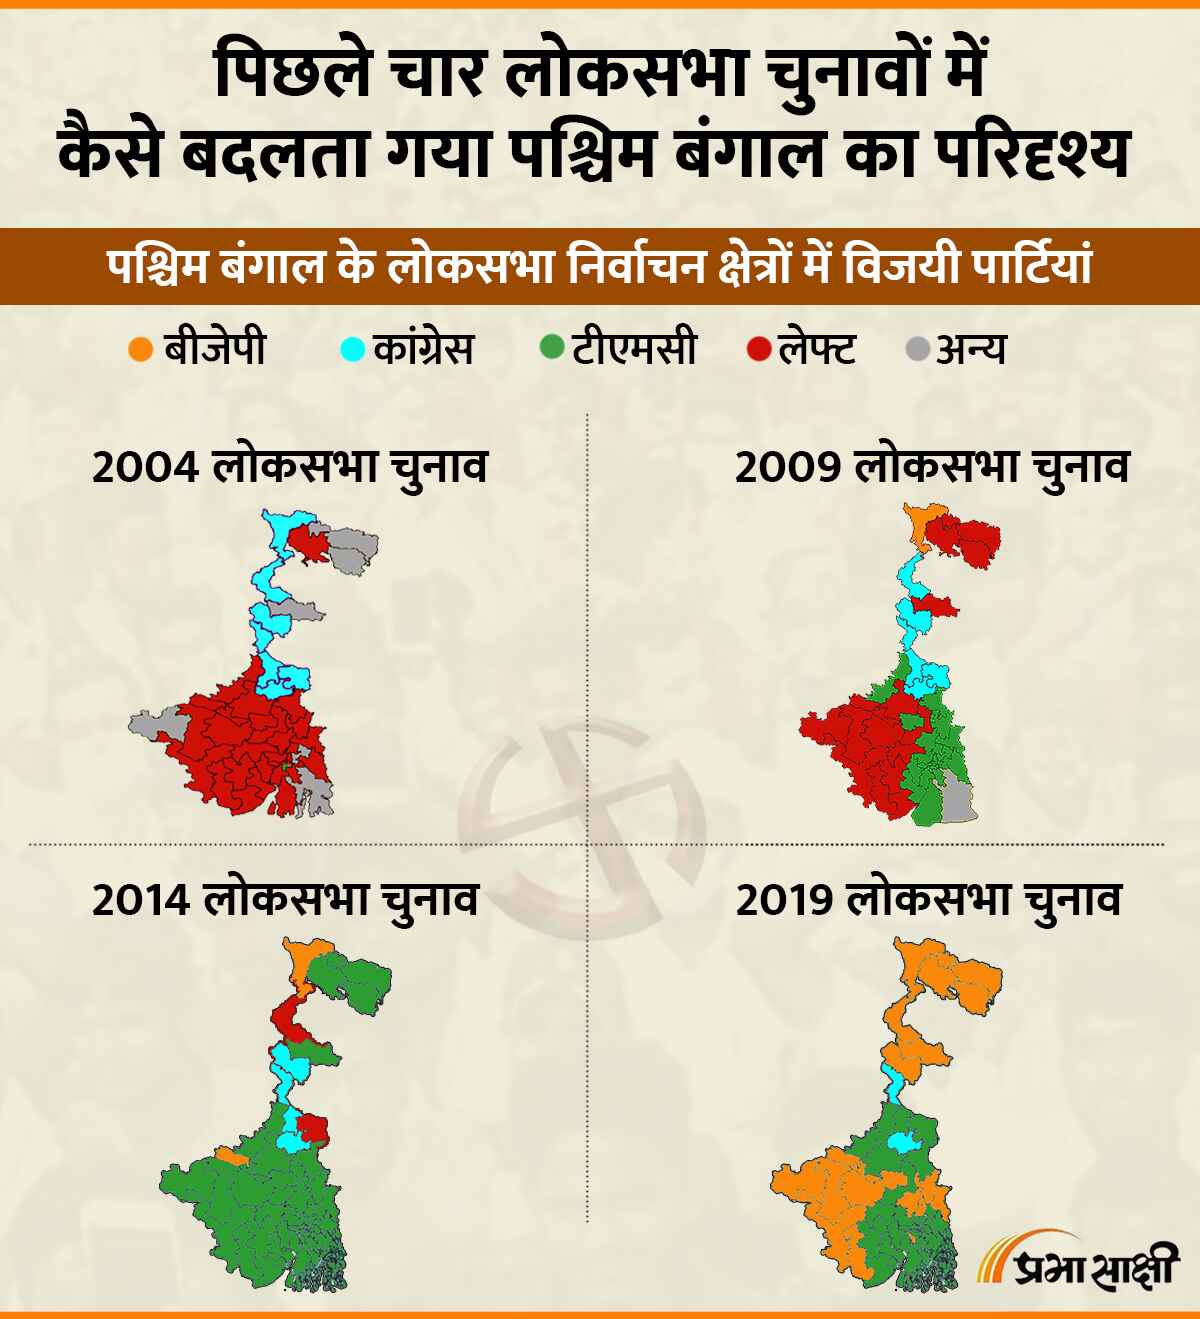 पिछले चार लोकसभा चुनावों में कैसे बदलता गया पश्चिम बंगाल का परिदृश्य